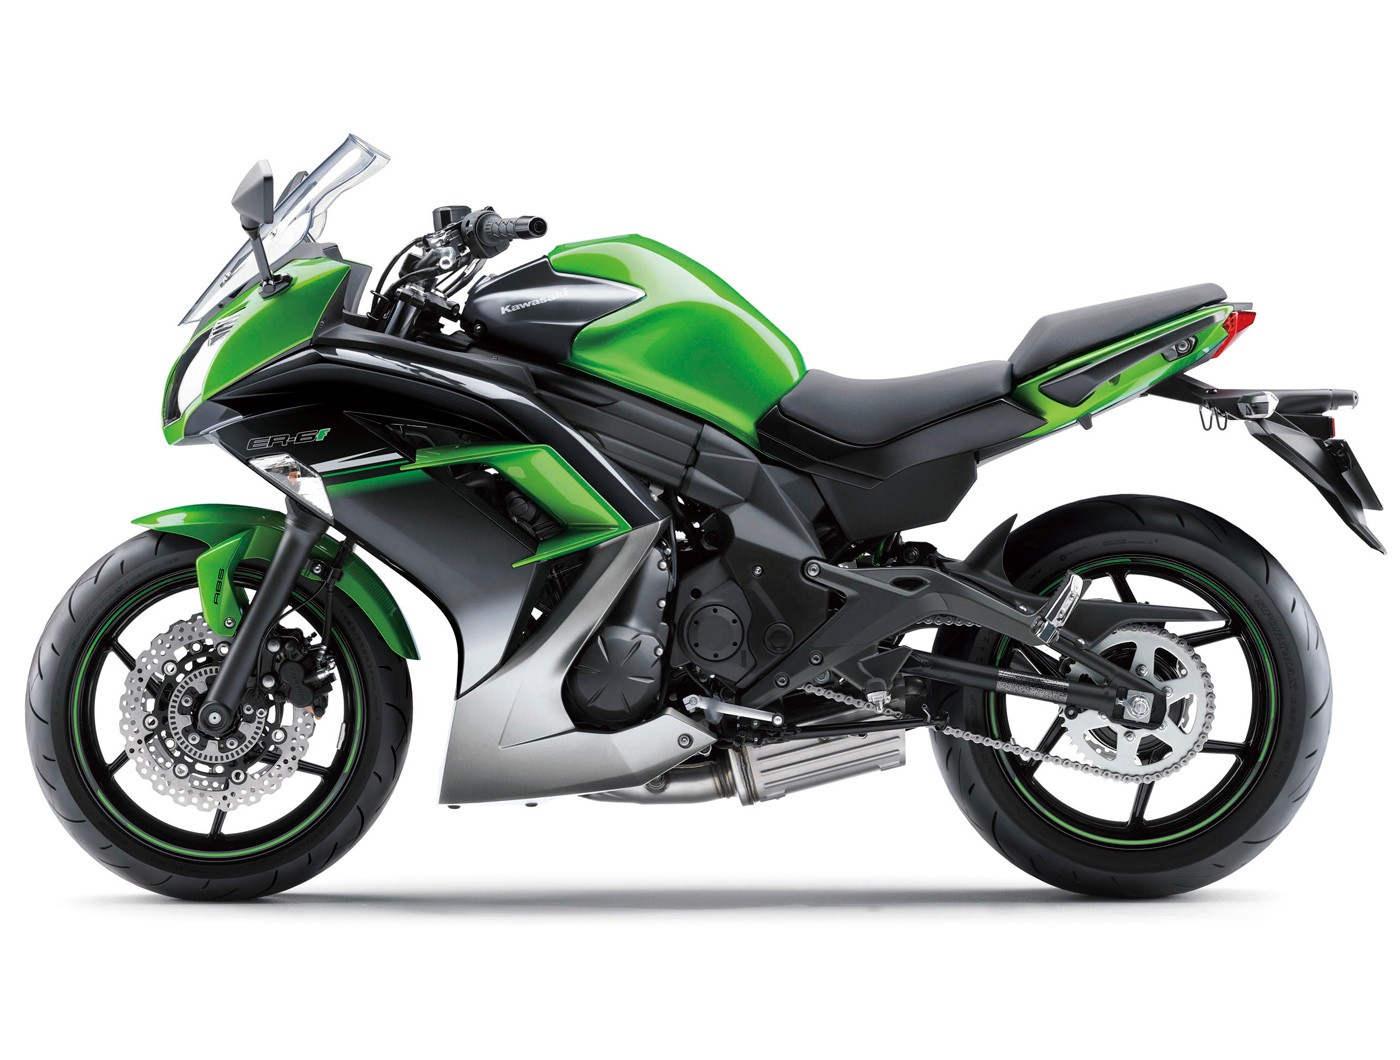 Review: 2013 Kawasaki Ninja 650L (LAMS) - Bike Review